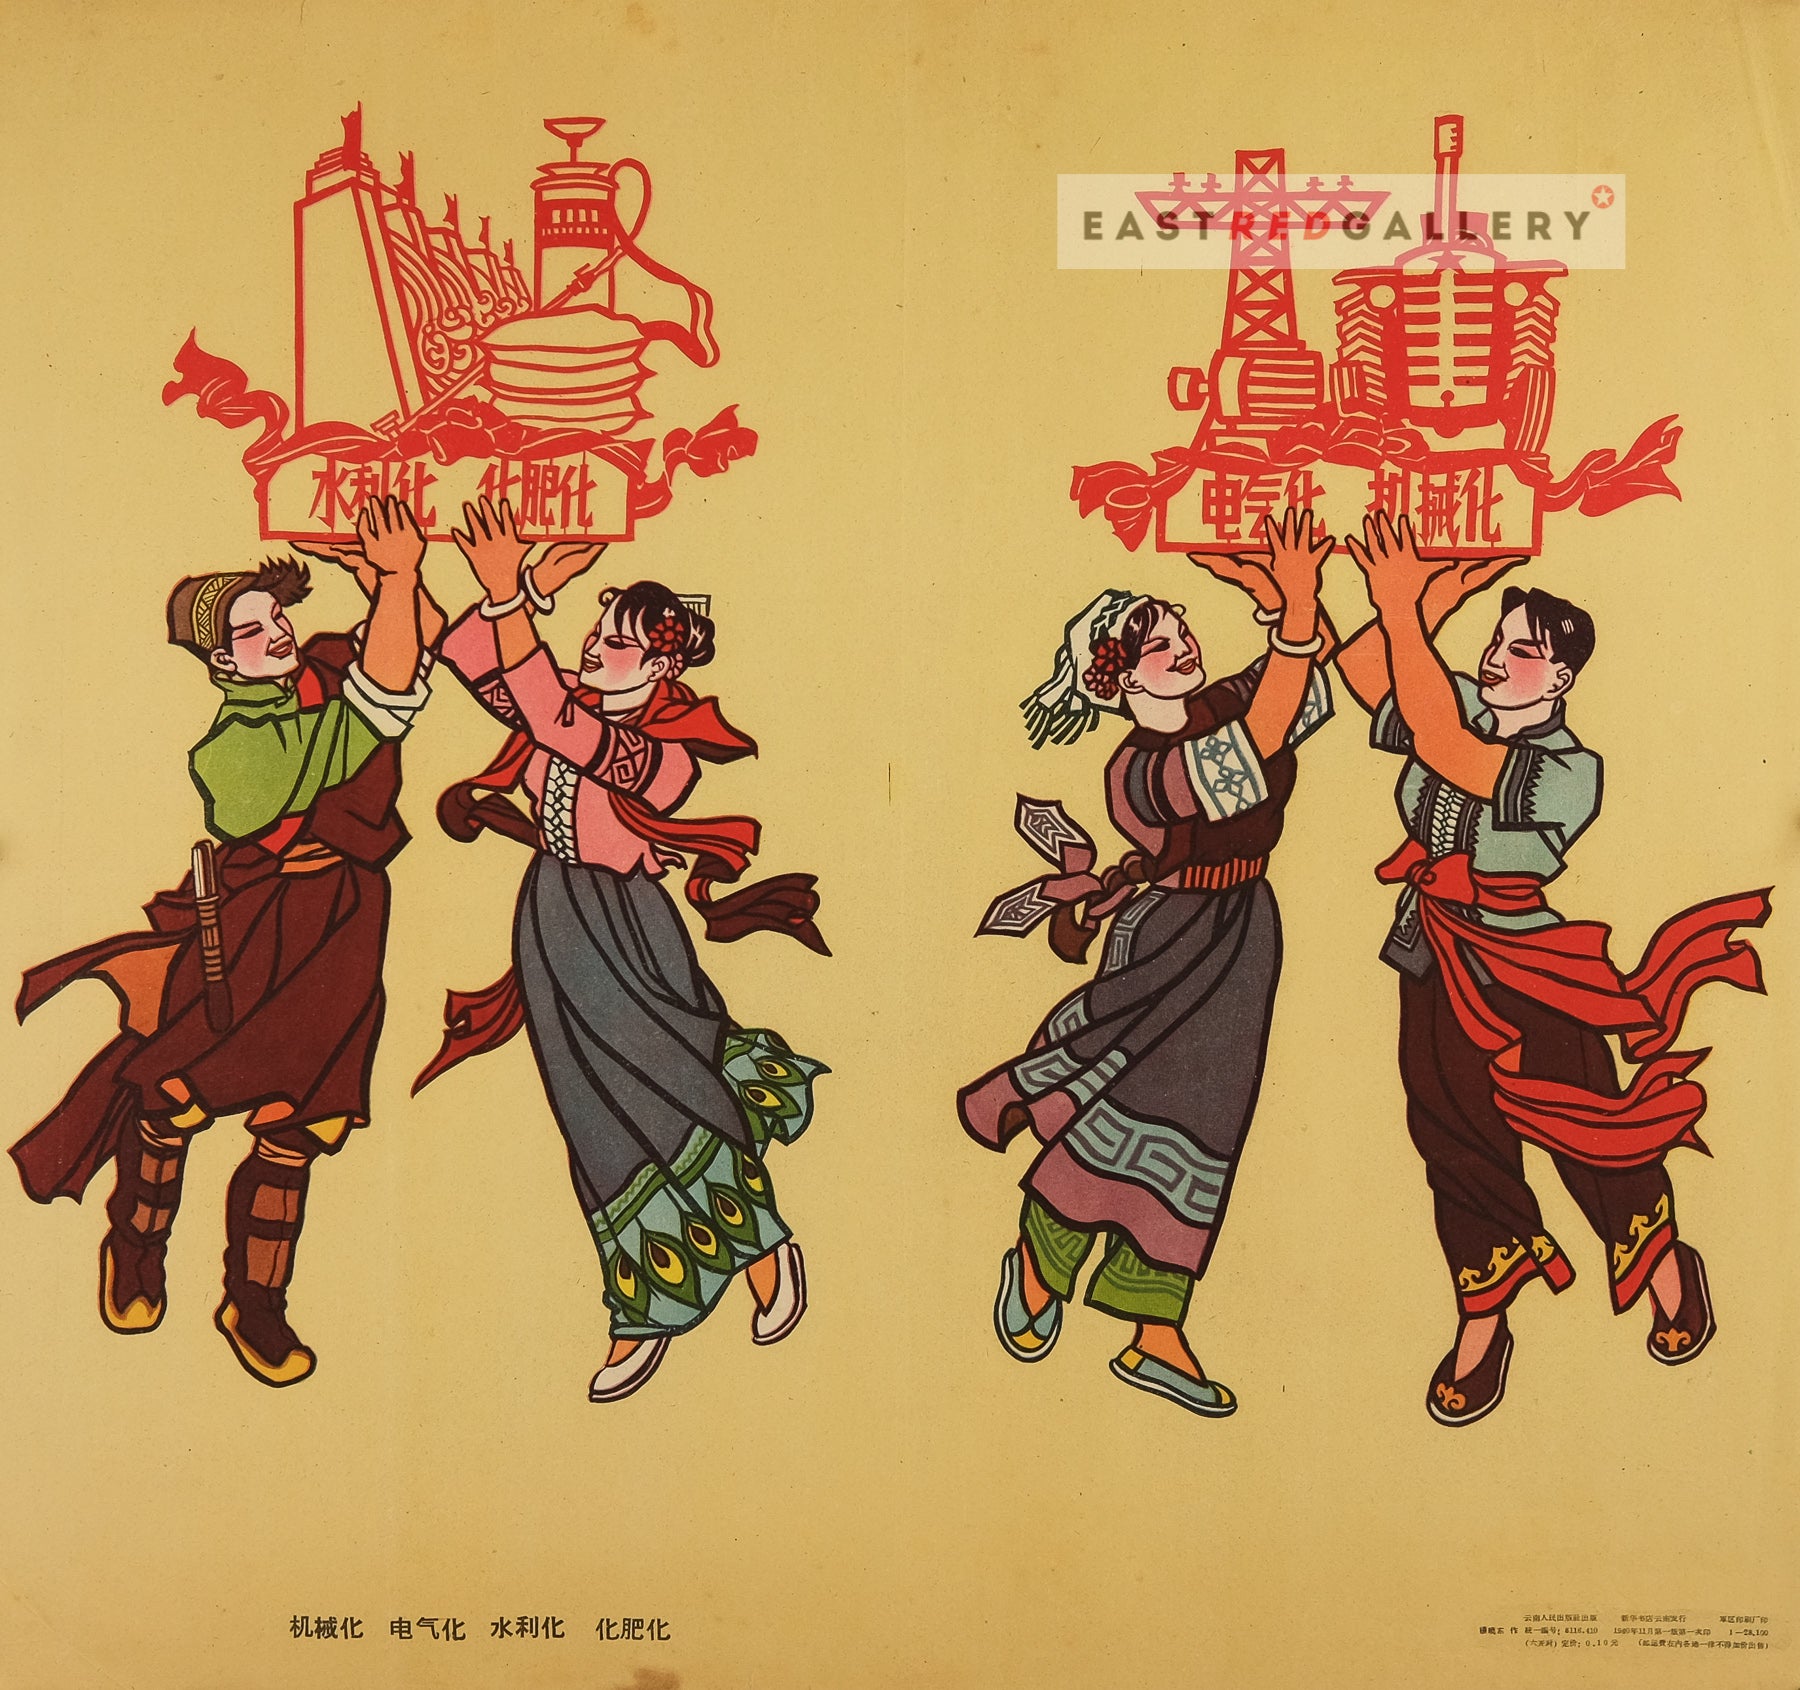 image of 1960 Chinese poster Mechanisation, electrification, irrigationisation, fertilisation